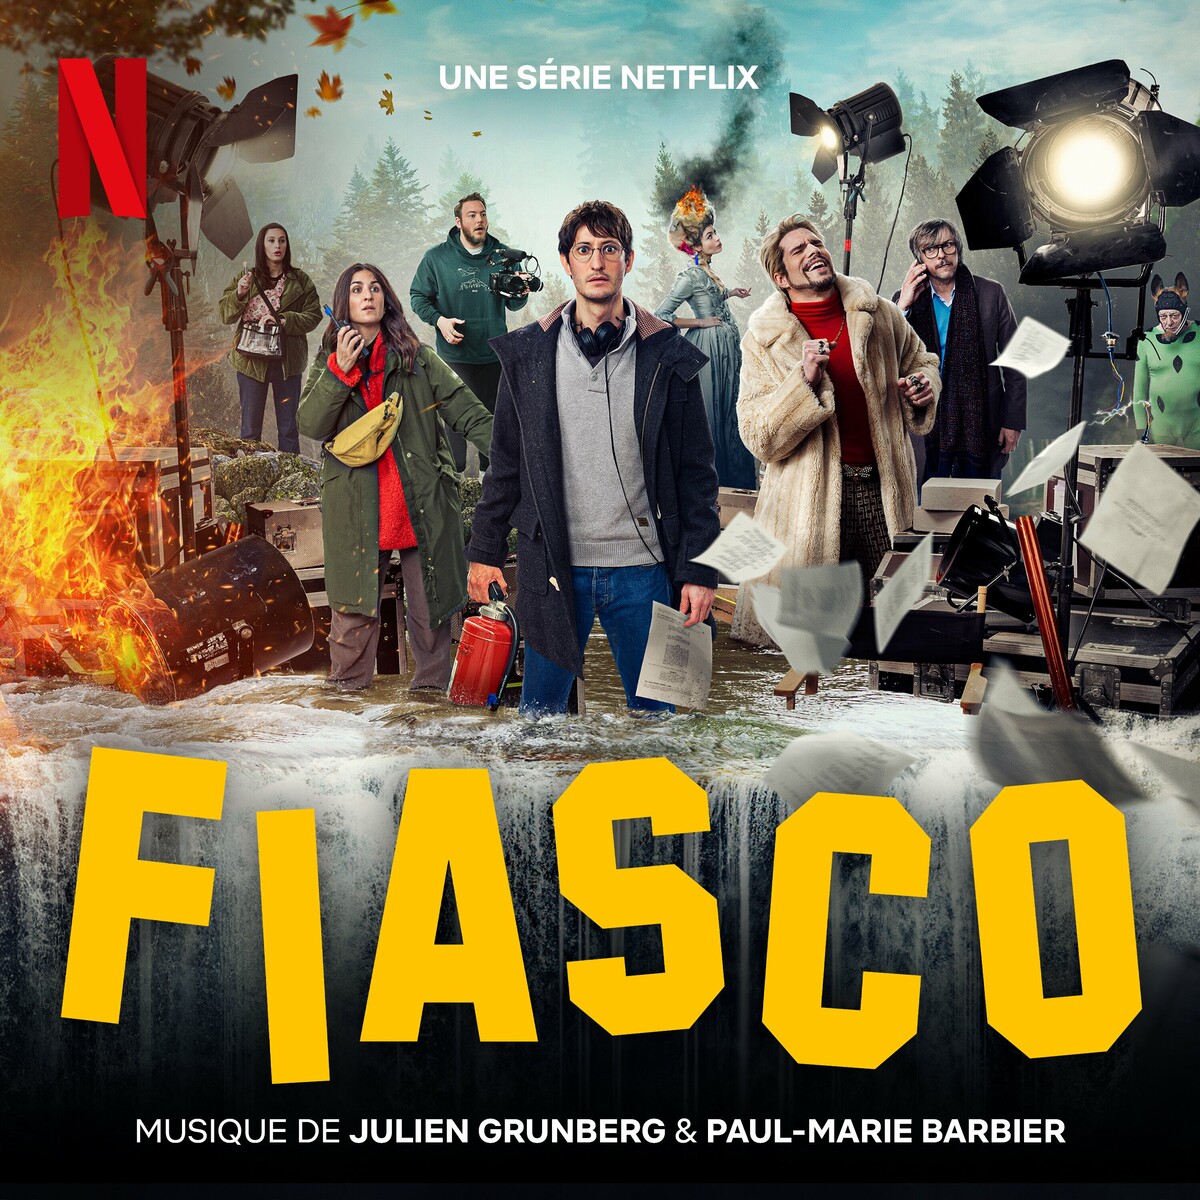 Fiasco Soundtrack (by Paul-Marie Barbier, Julien Grunberg) -- Seeders: 2 -- Leechers: 0